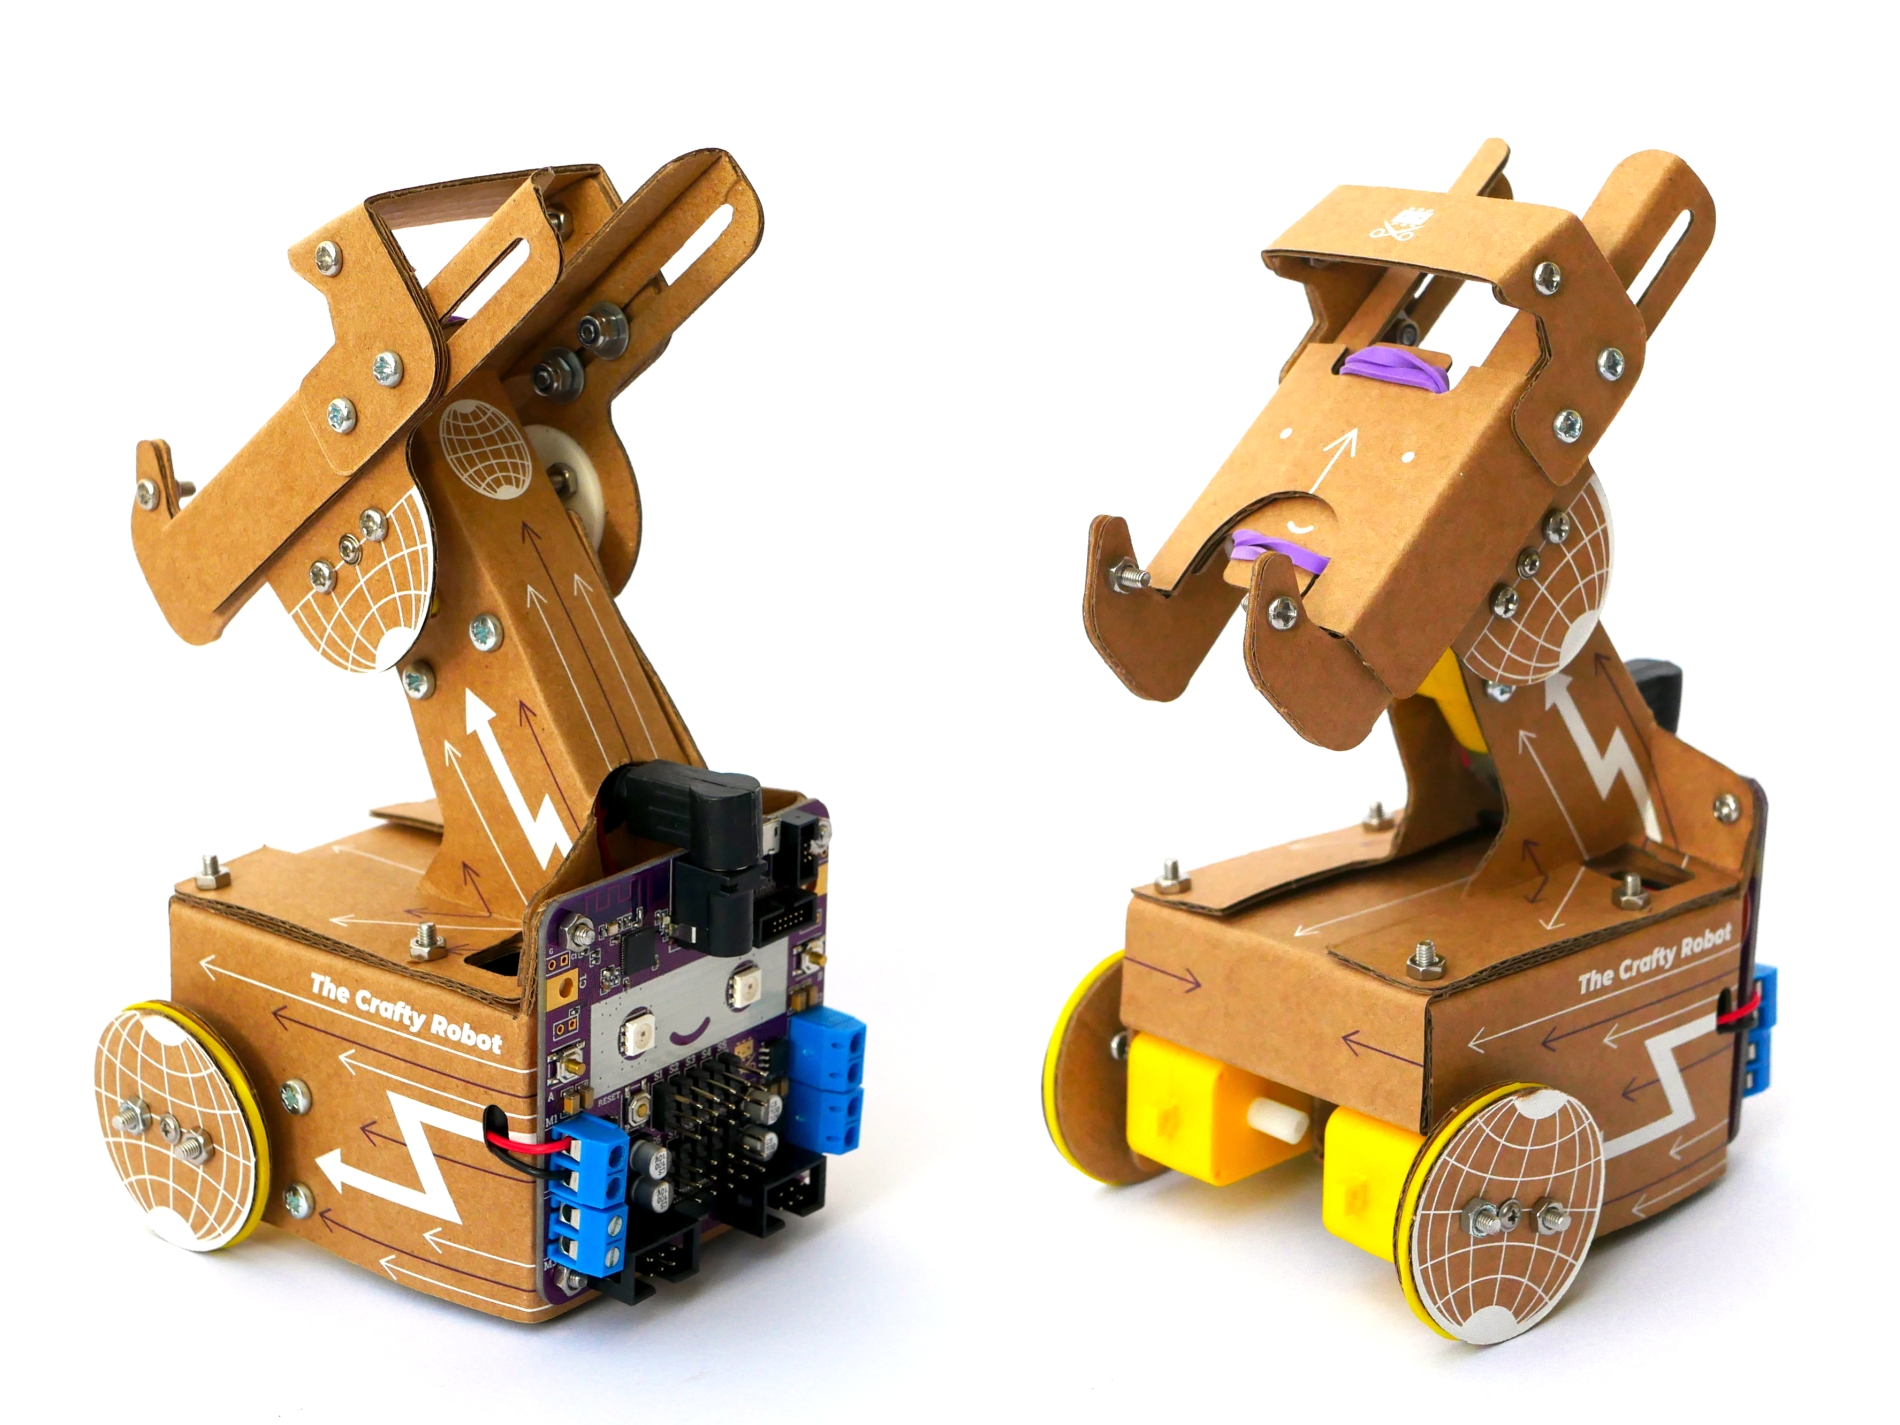 Smartipresence robot kits